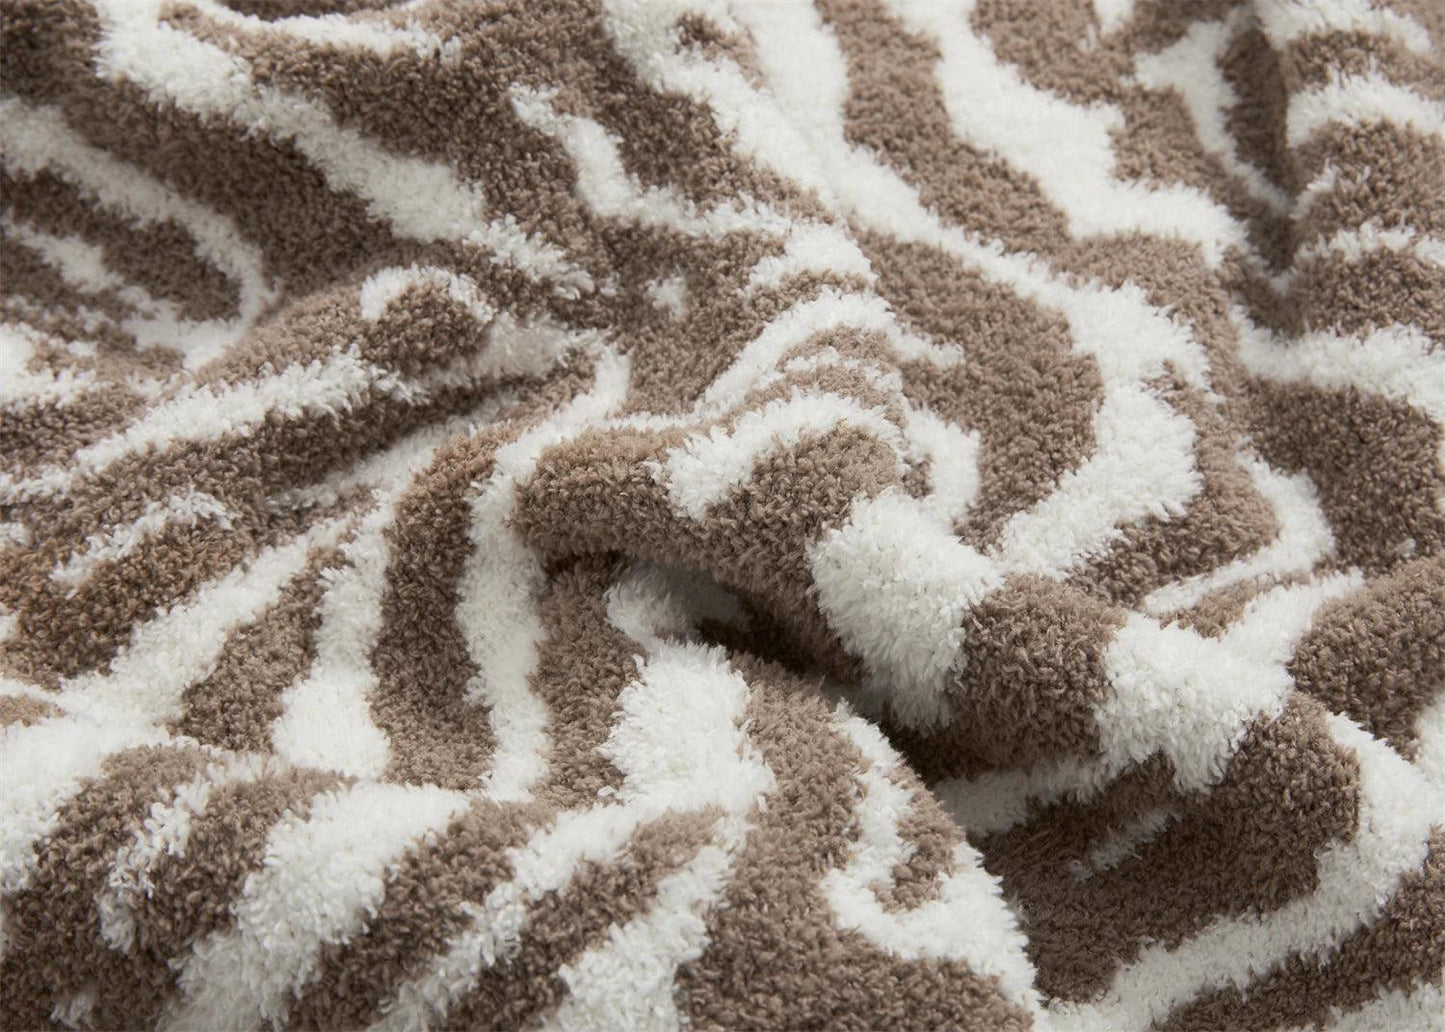 Zebra Stripe Microfiber Throw Blanket - Fluffyslip